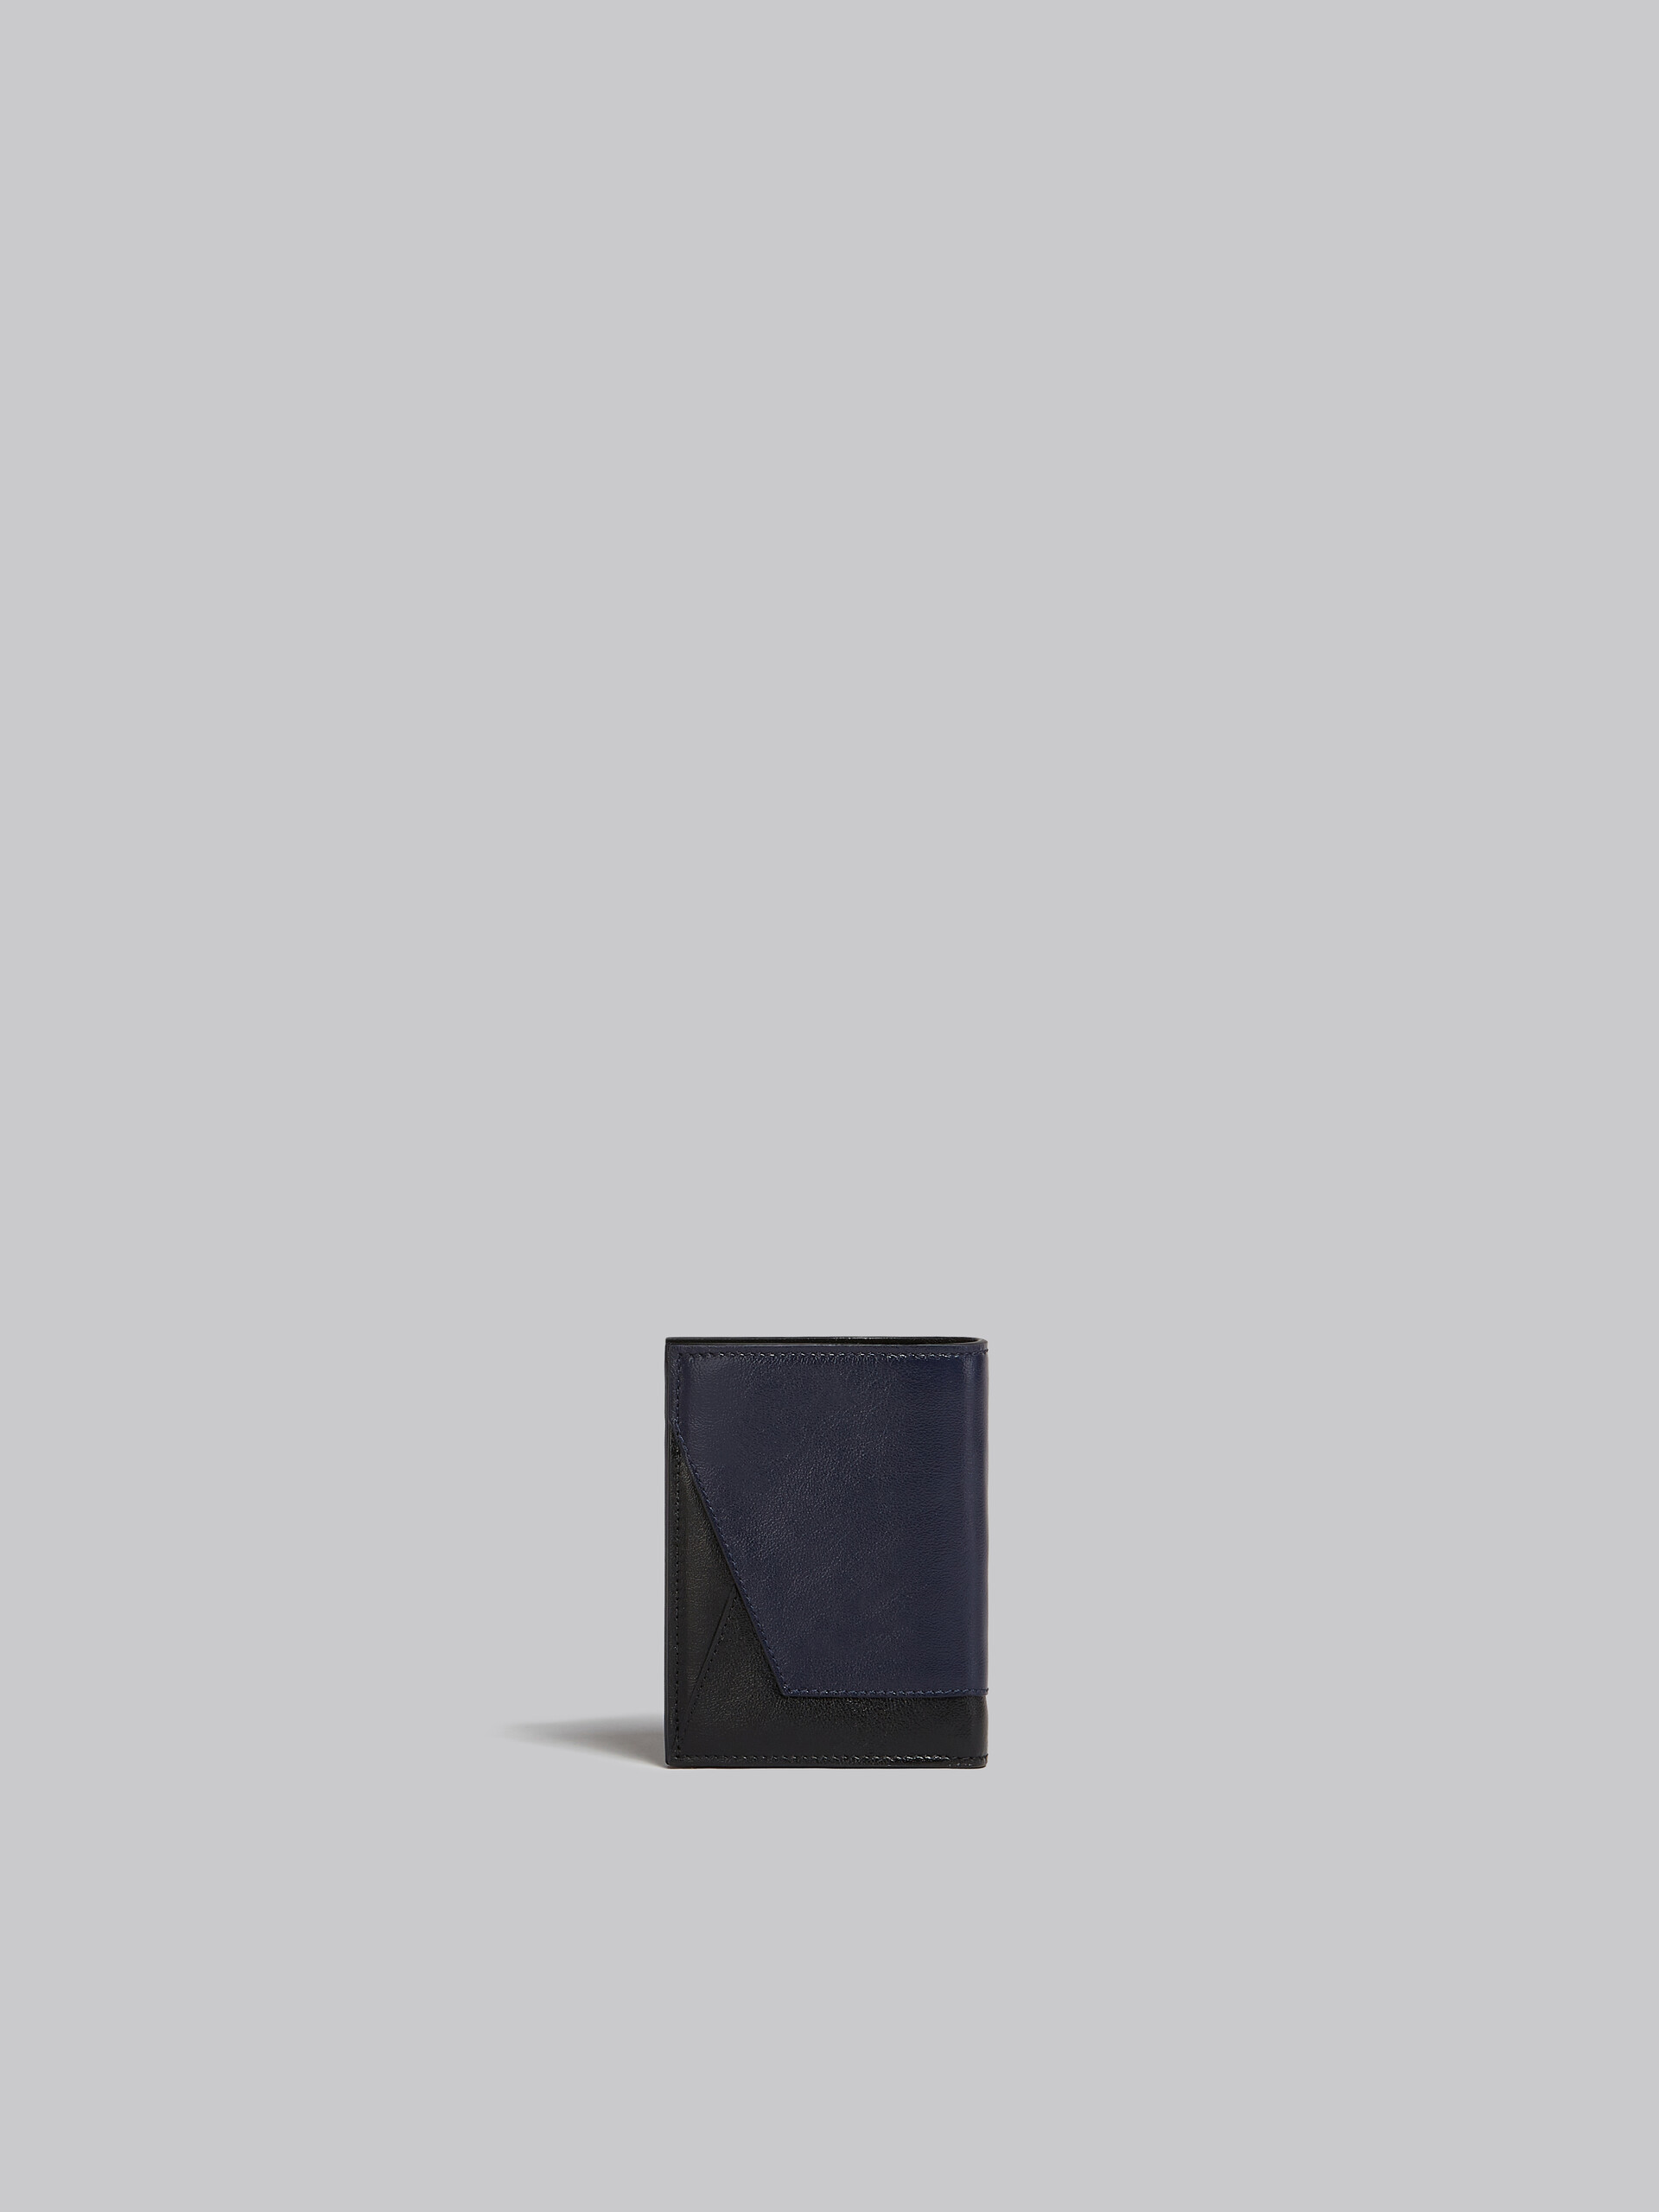 Zweifache Faltbrieftasche aus Leder in Marineblau und Schwarz - Brieftaschen - Image 3